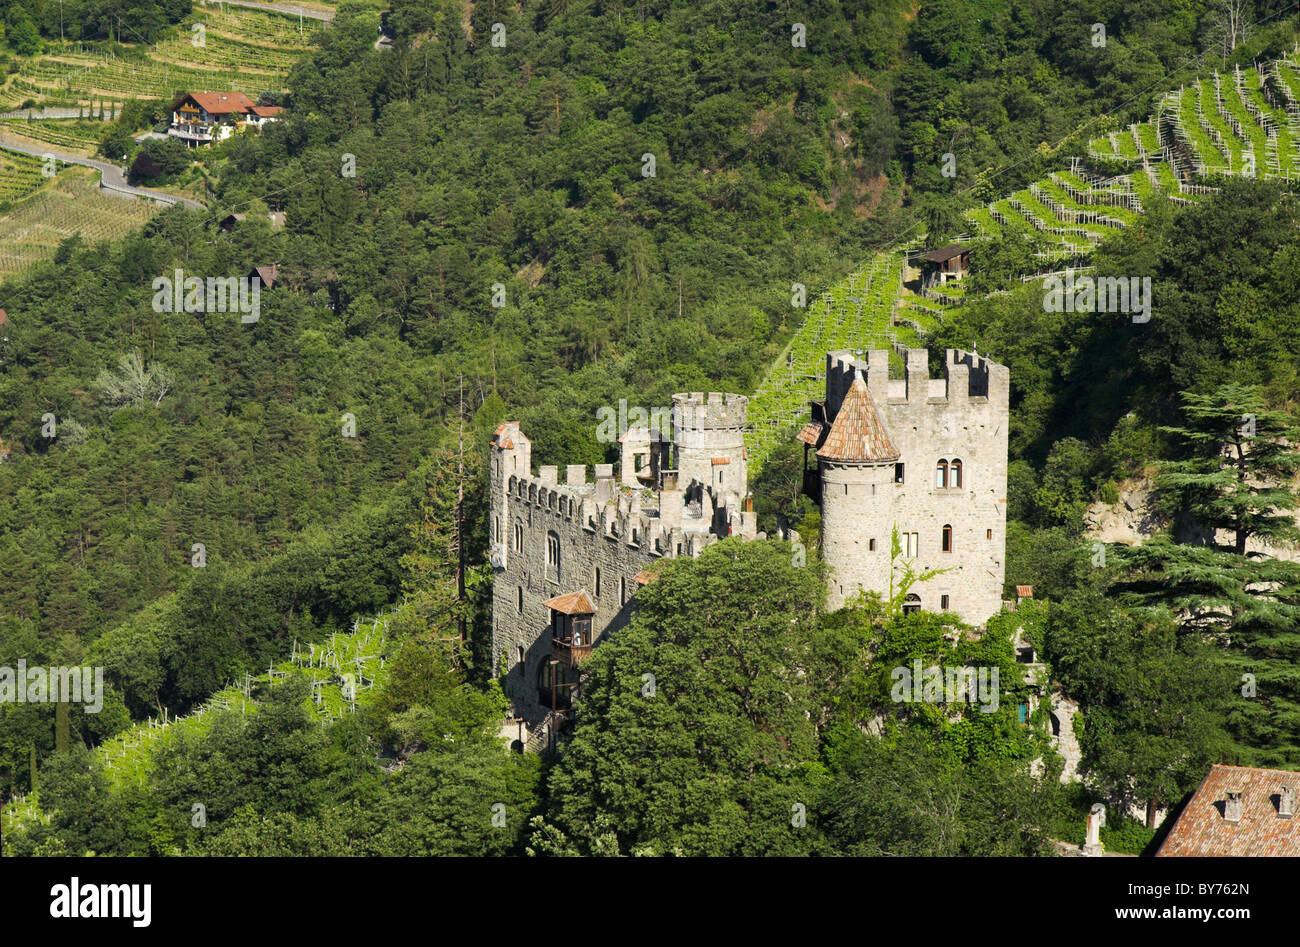 Brunnenburg Castle, Italy Stock Photo